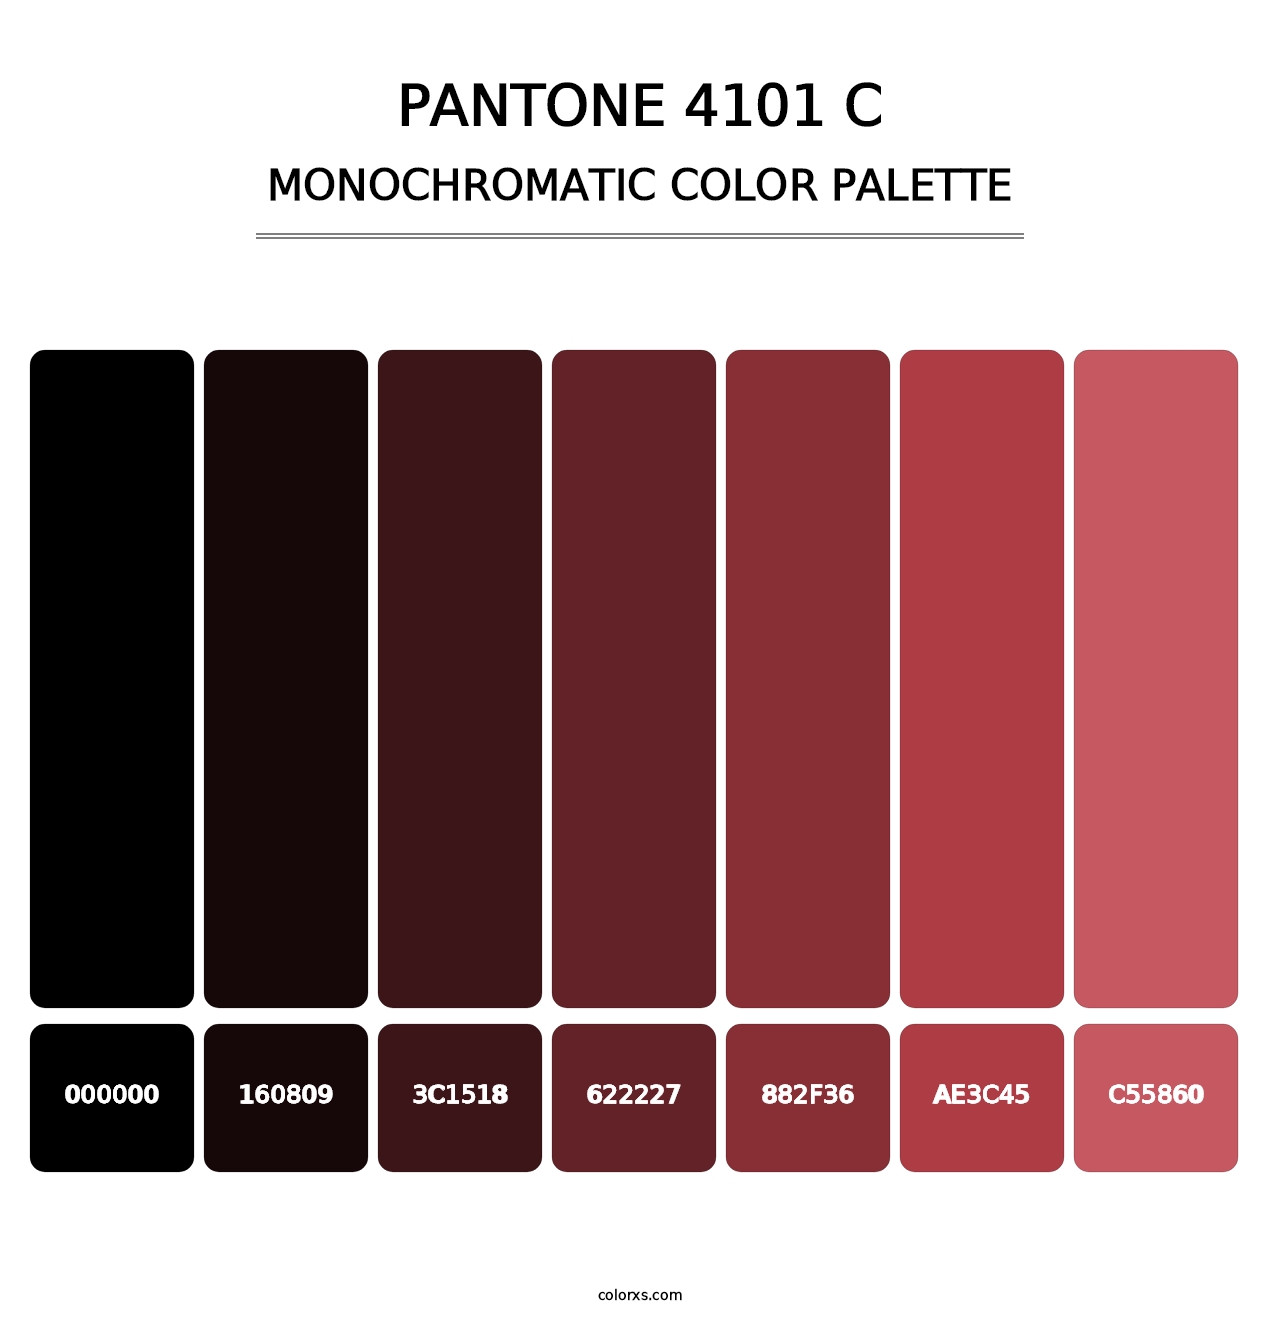 PANTONE 4101 C - Monochromatic Color Palette